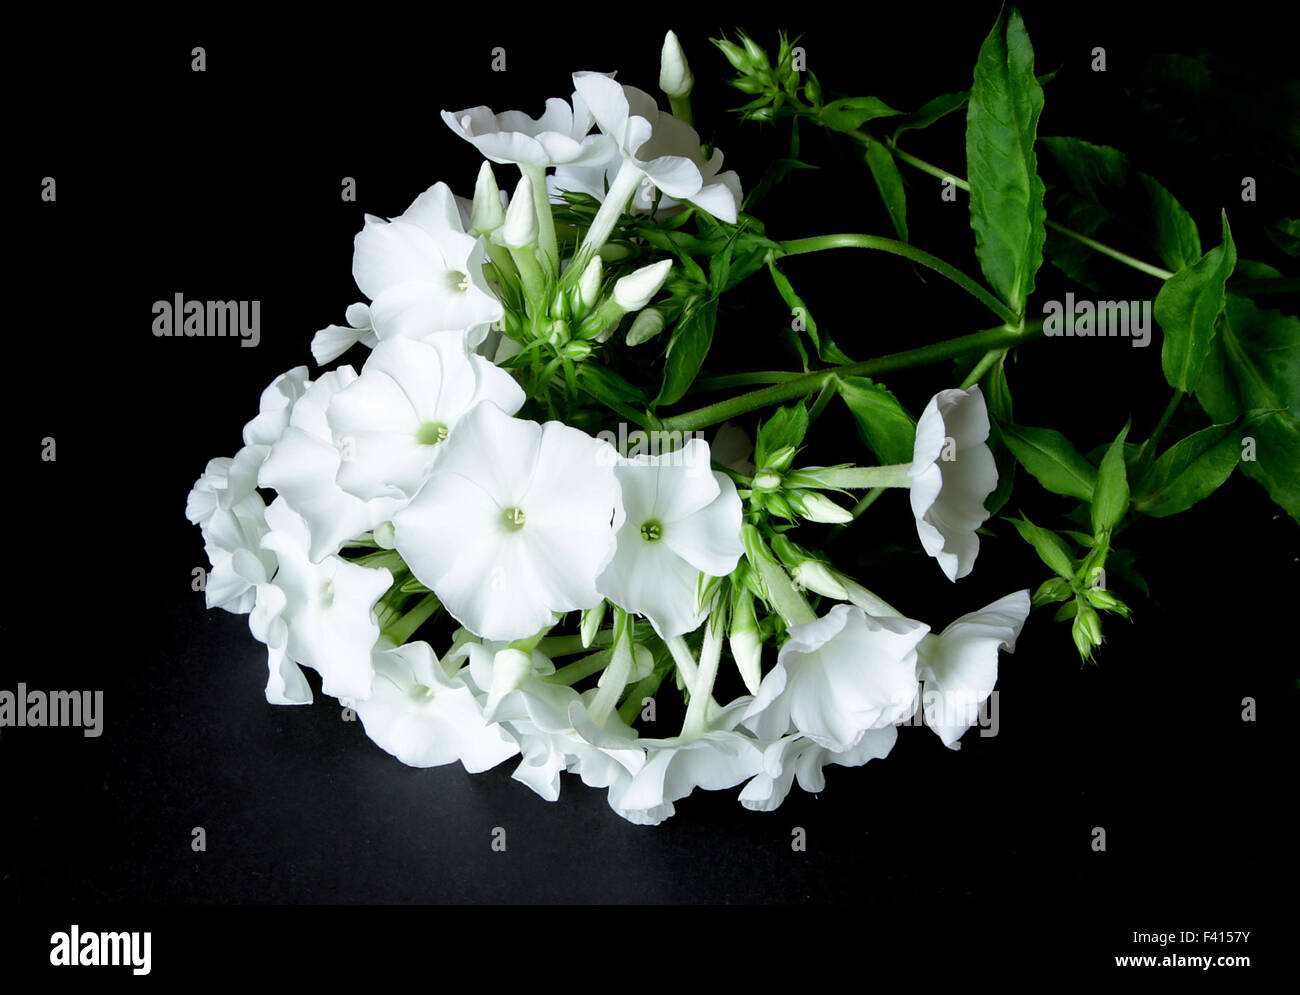 Belle floraison blanche lilly lilium sur fond noir Banque D'Images